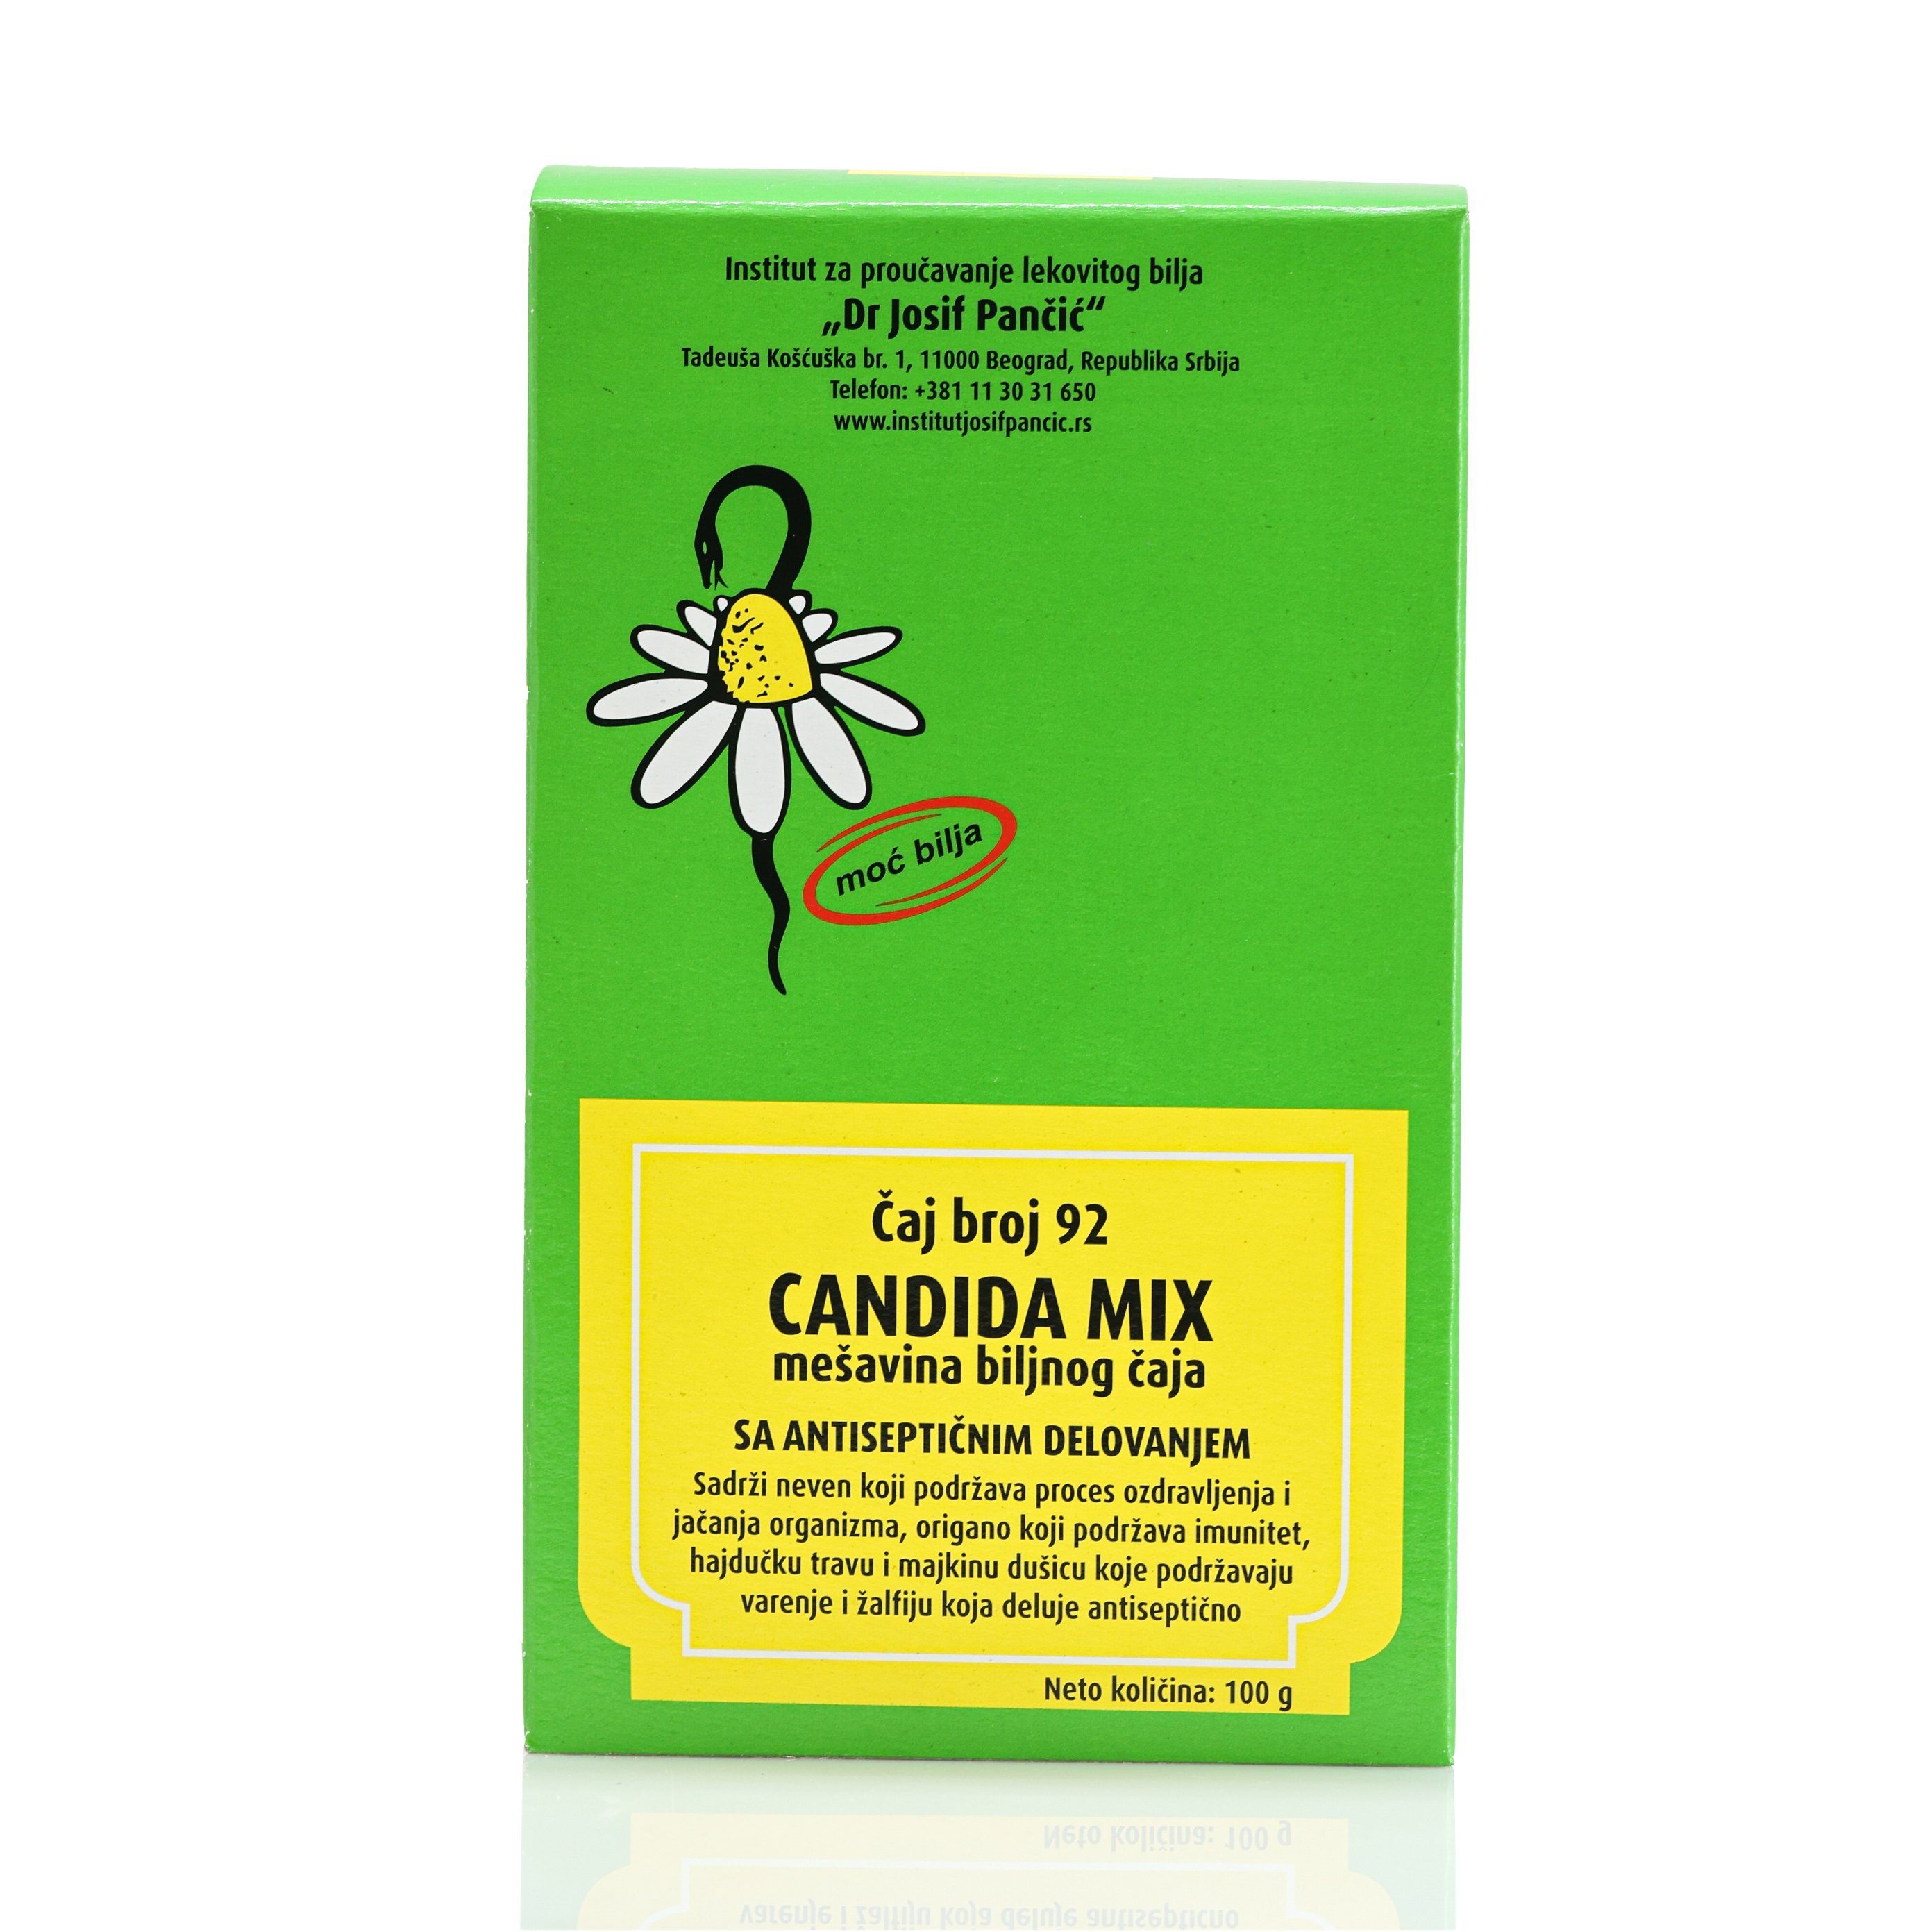 Candida Mix mešavina biljnog čaja sa antiseptičnim delovanjem (Čaj broj 92)